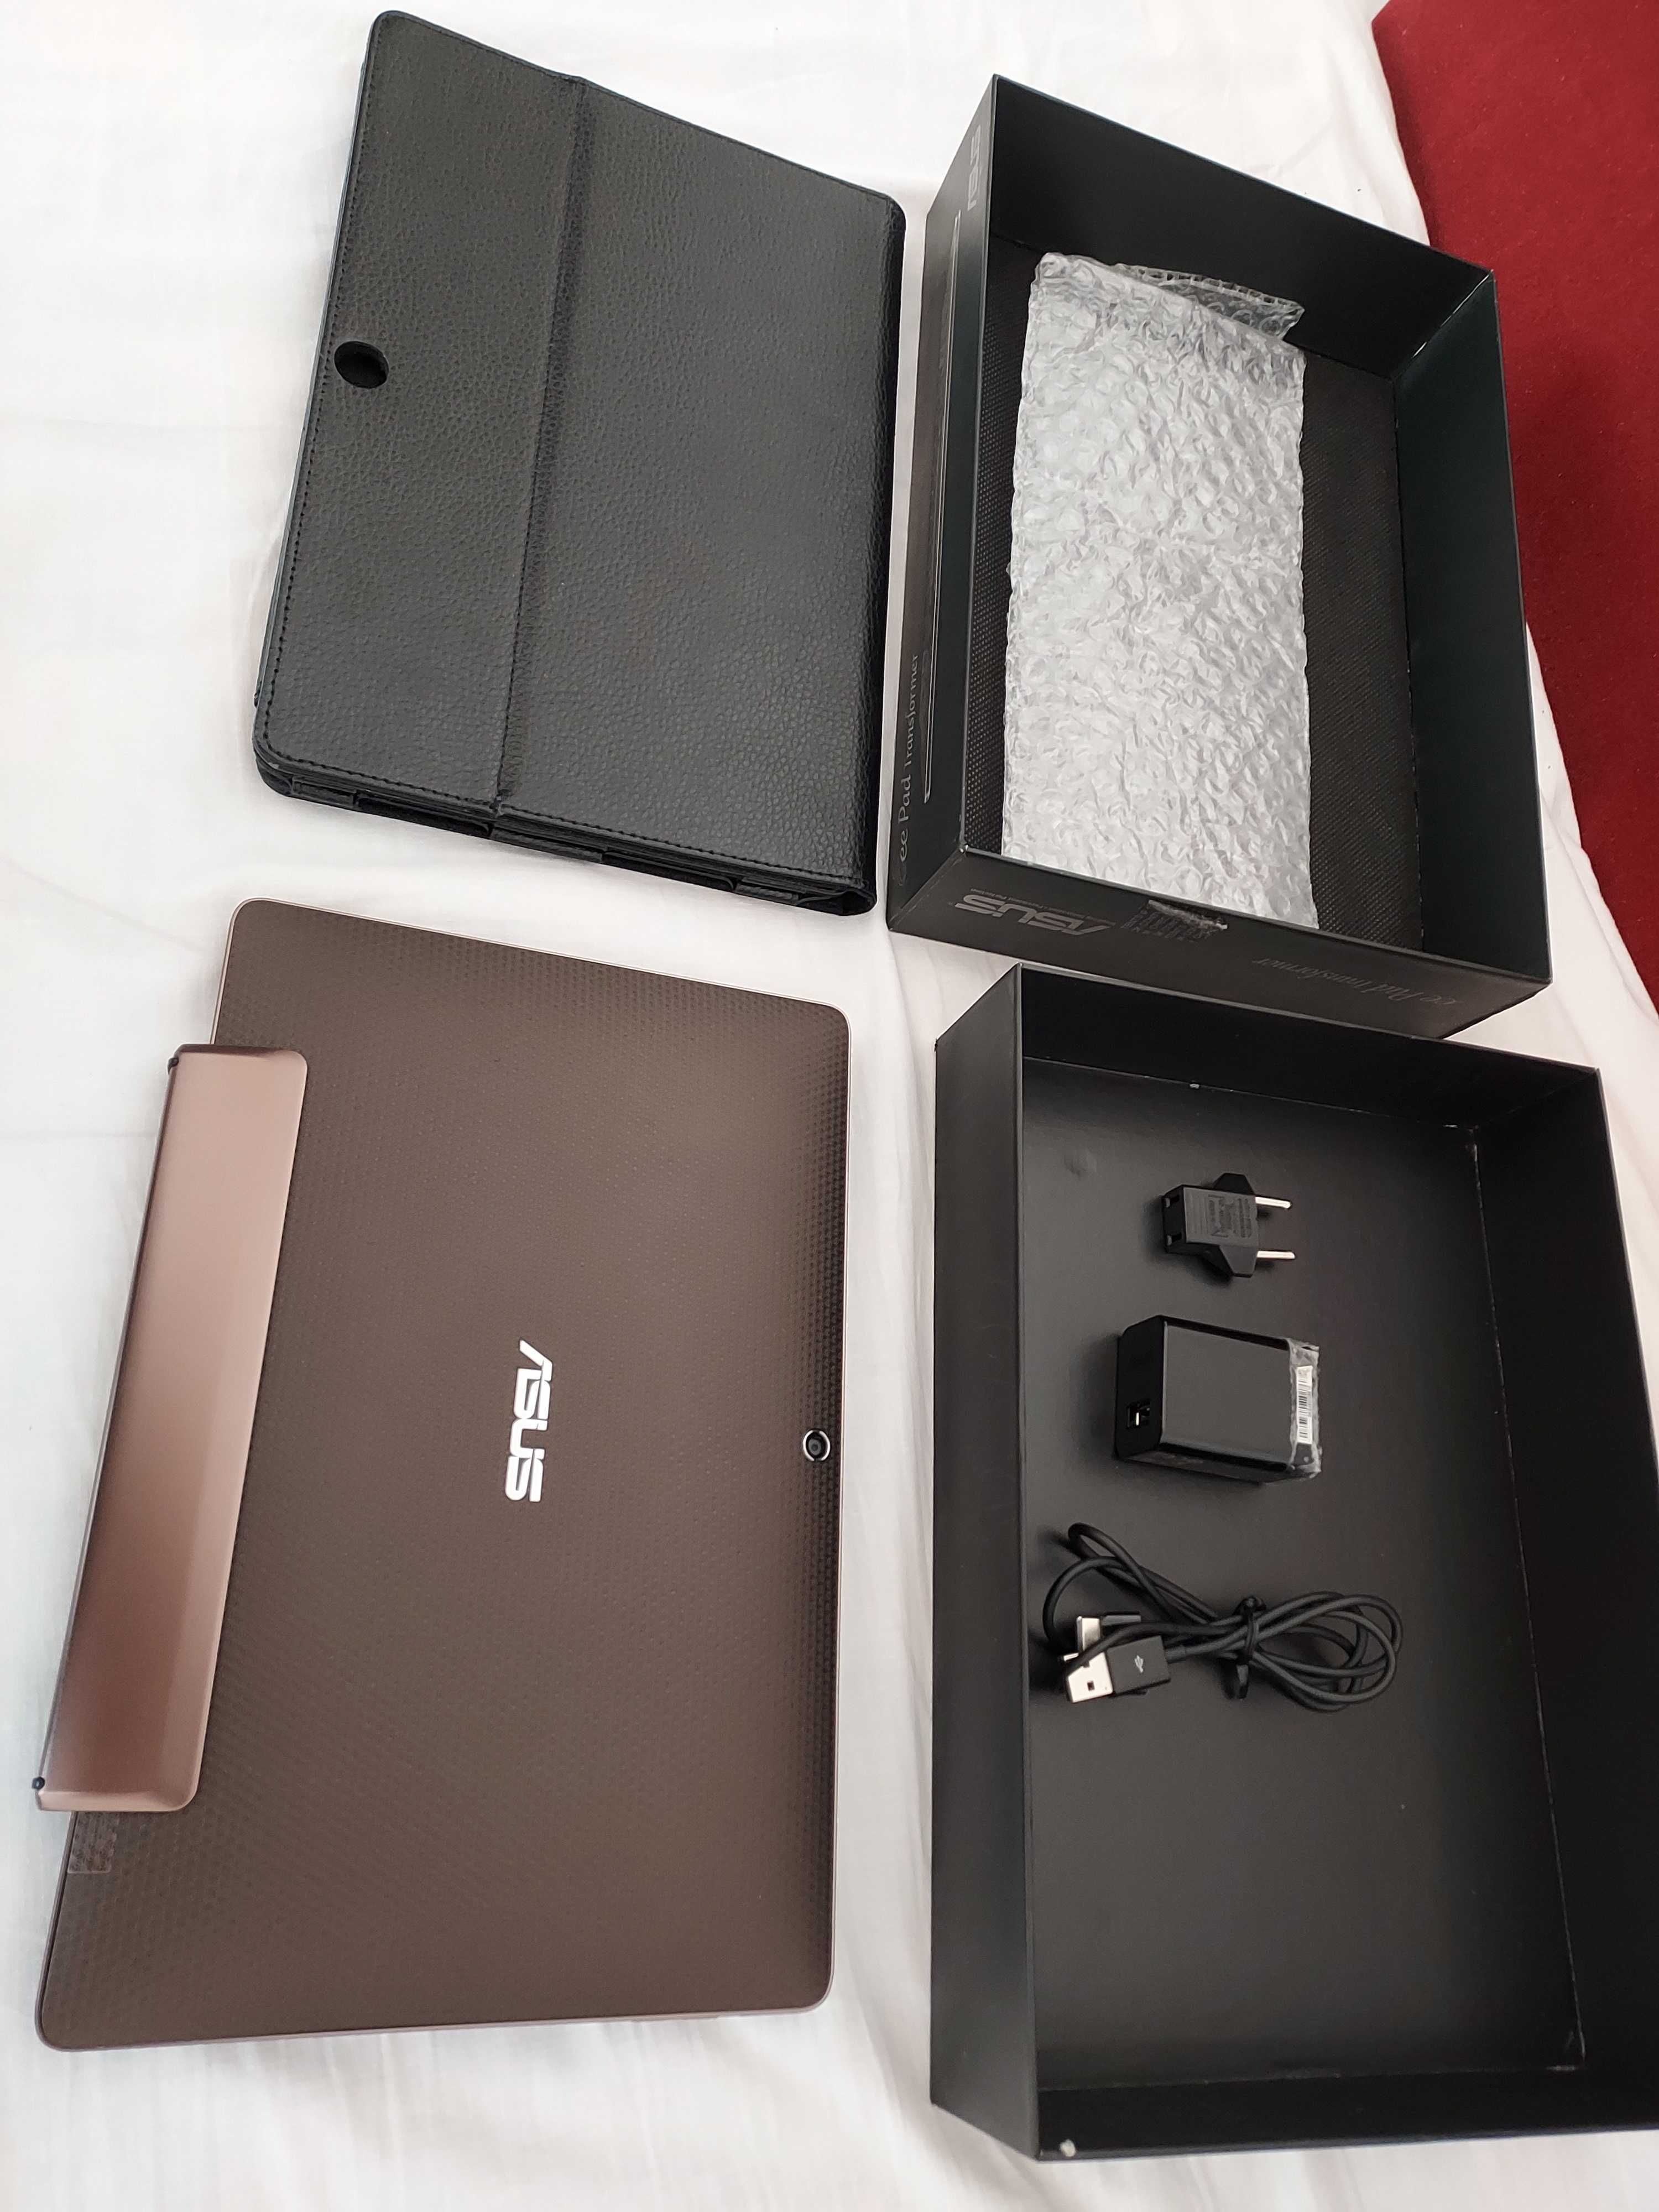 Asus Transformer TF101, notebook si tableta ,noua la cutie + cadou